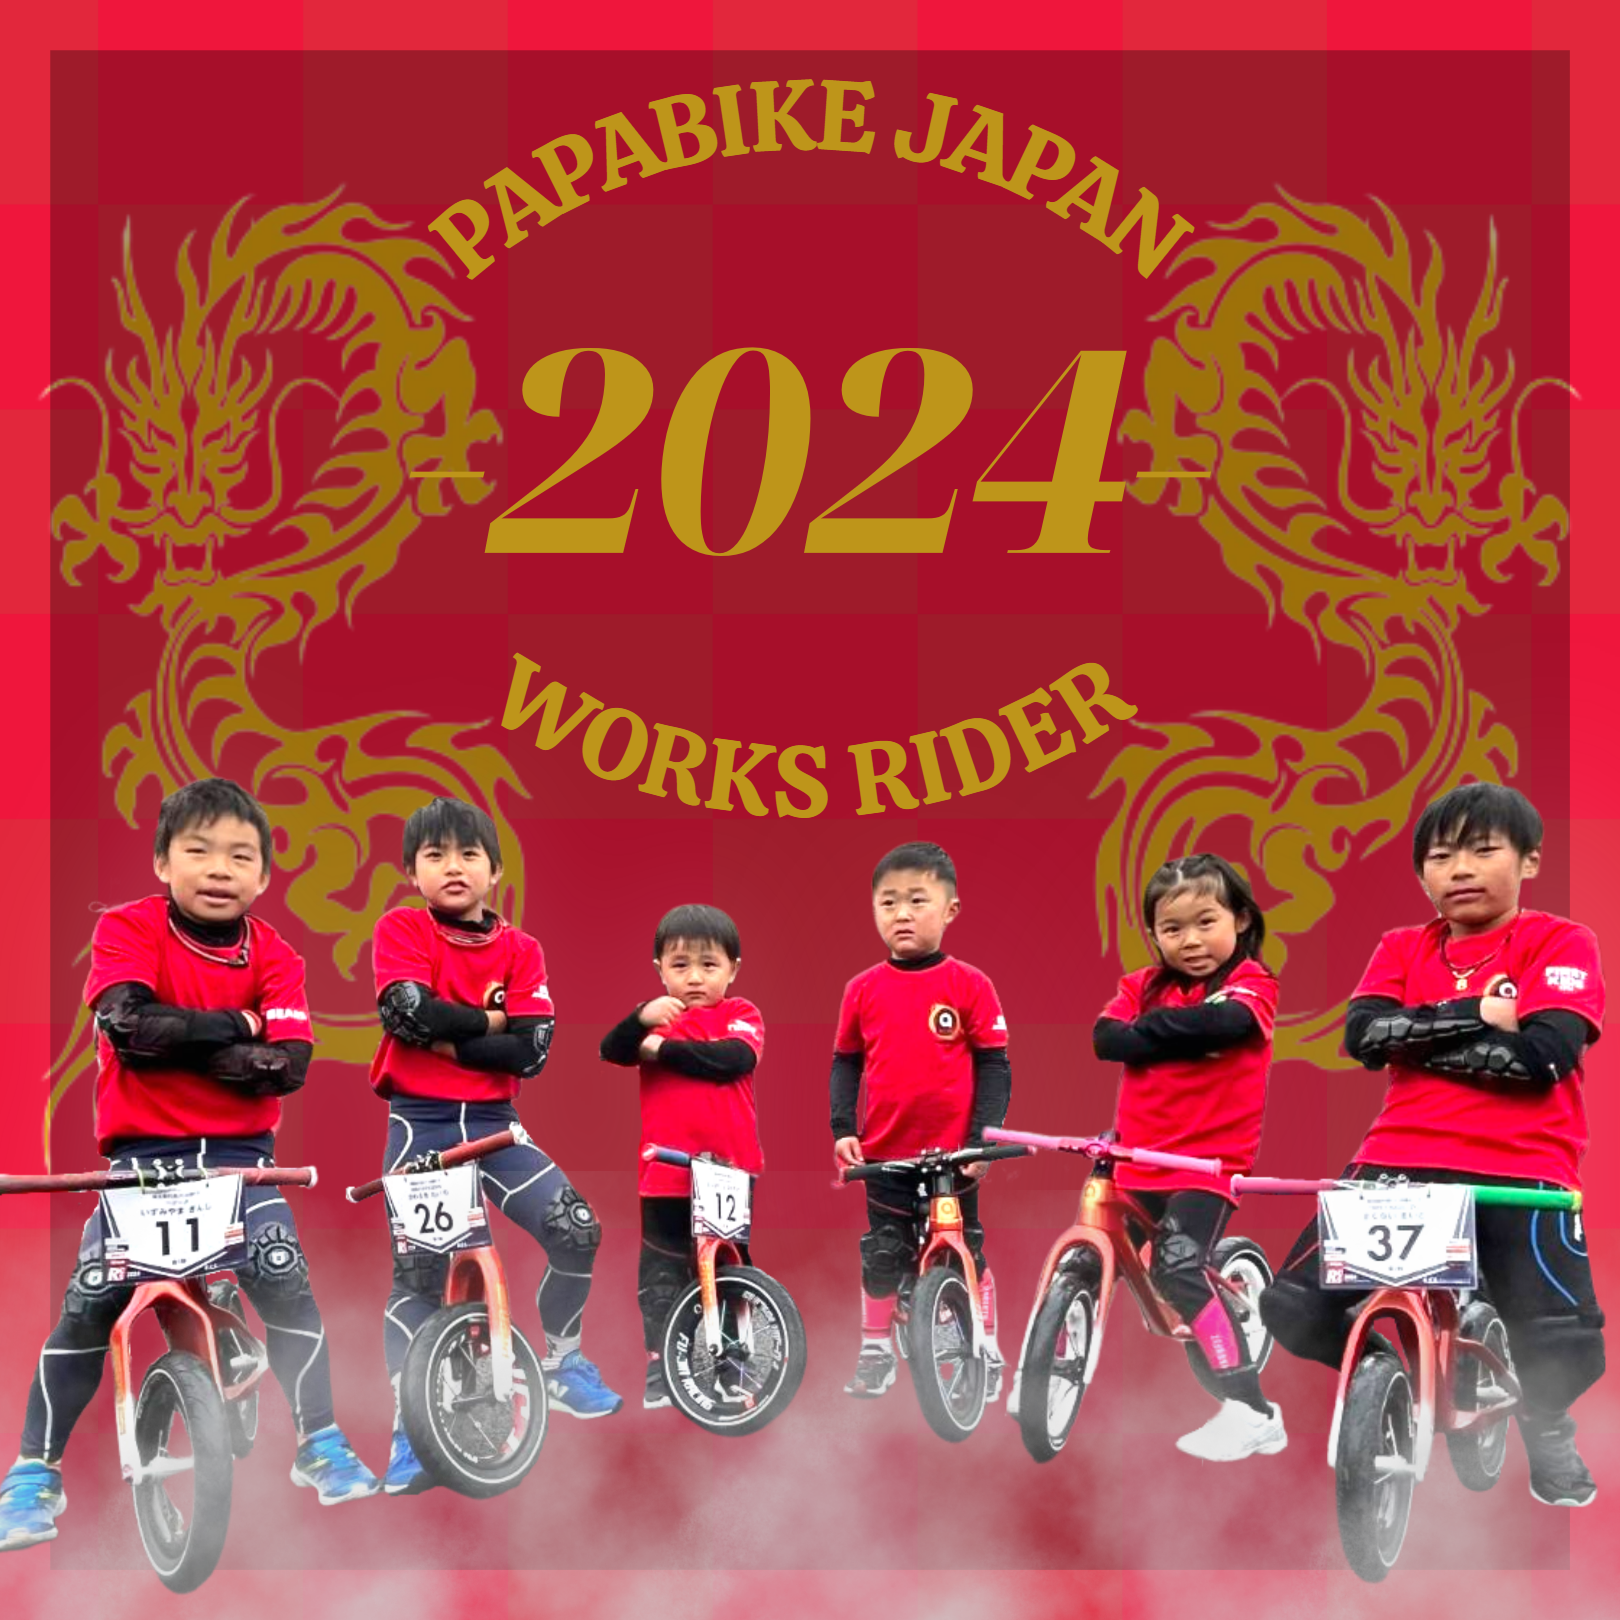 PAPABIKE JAPAN WORKS RIDER 2024